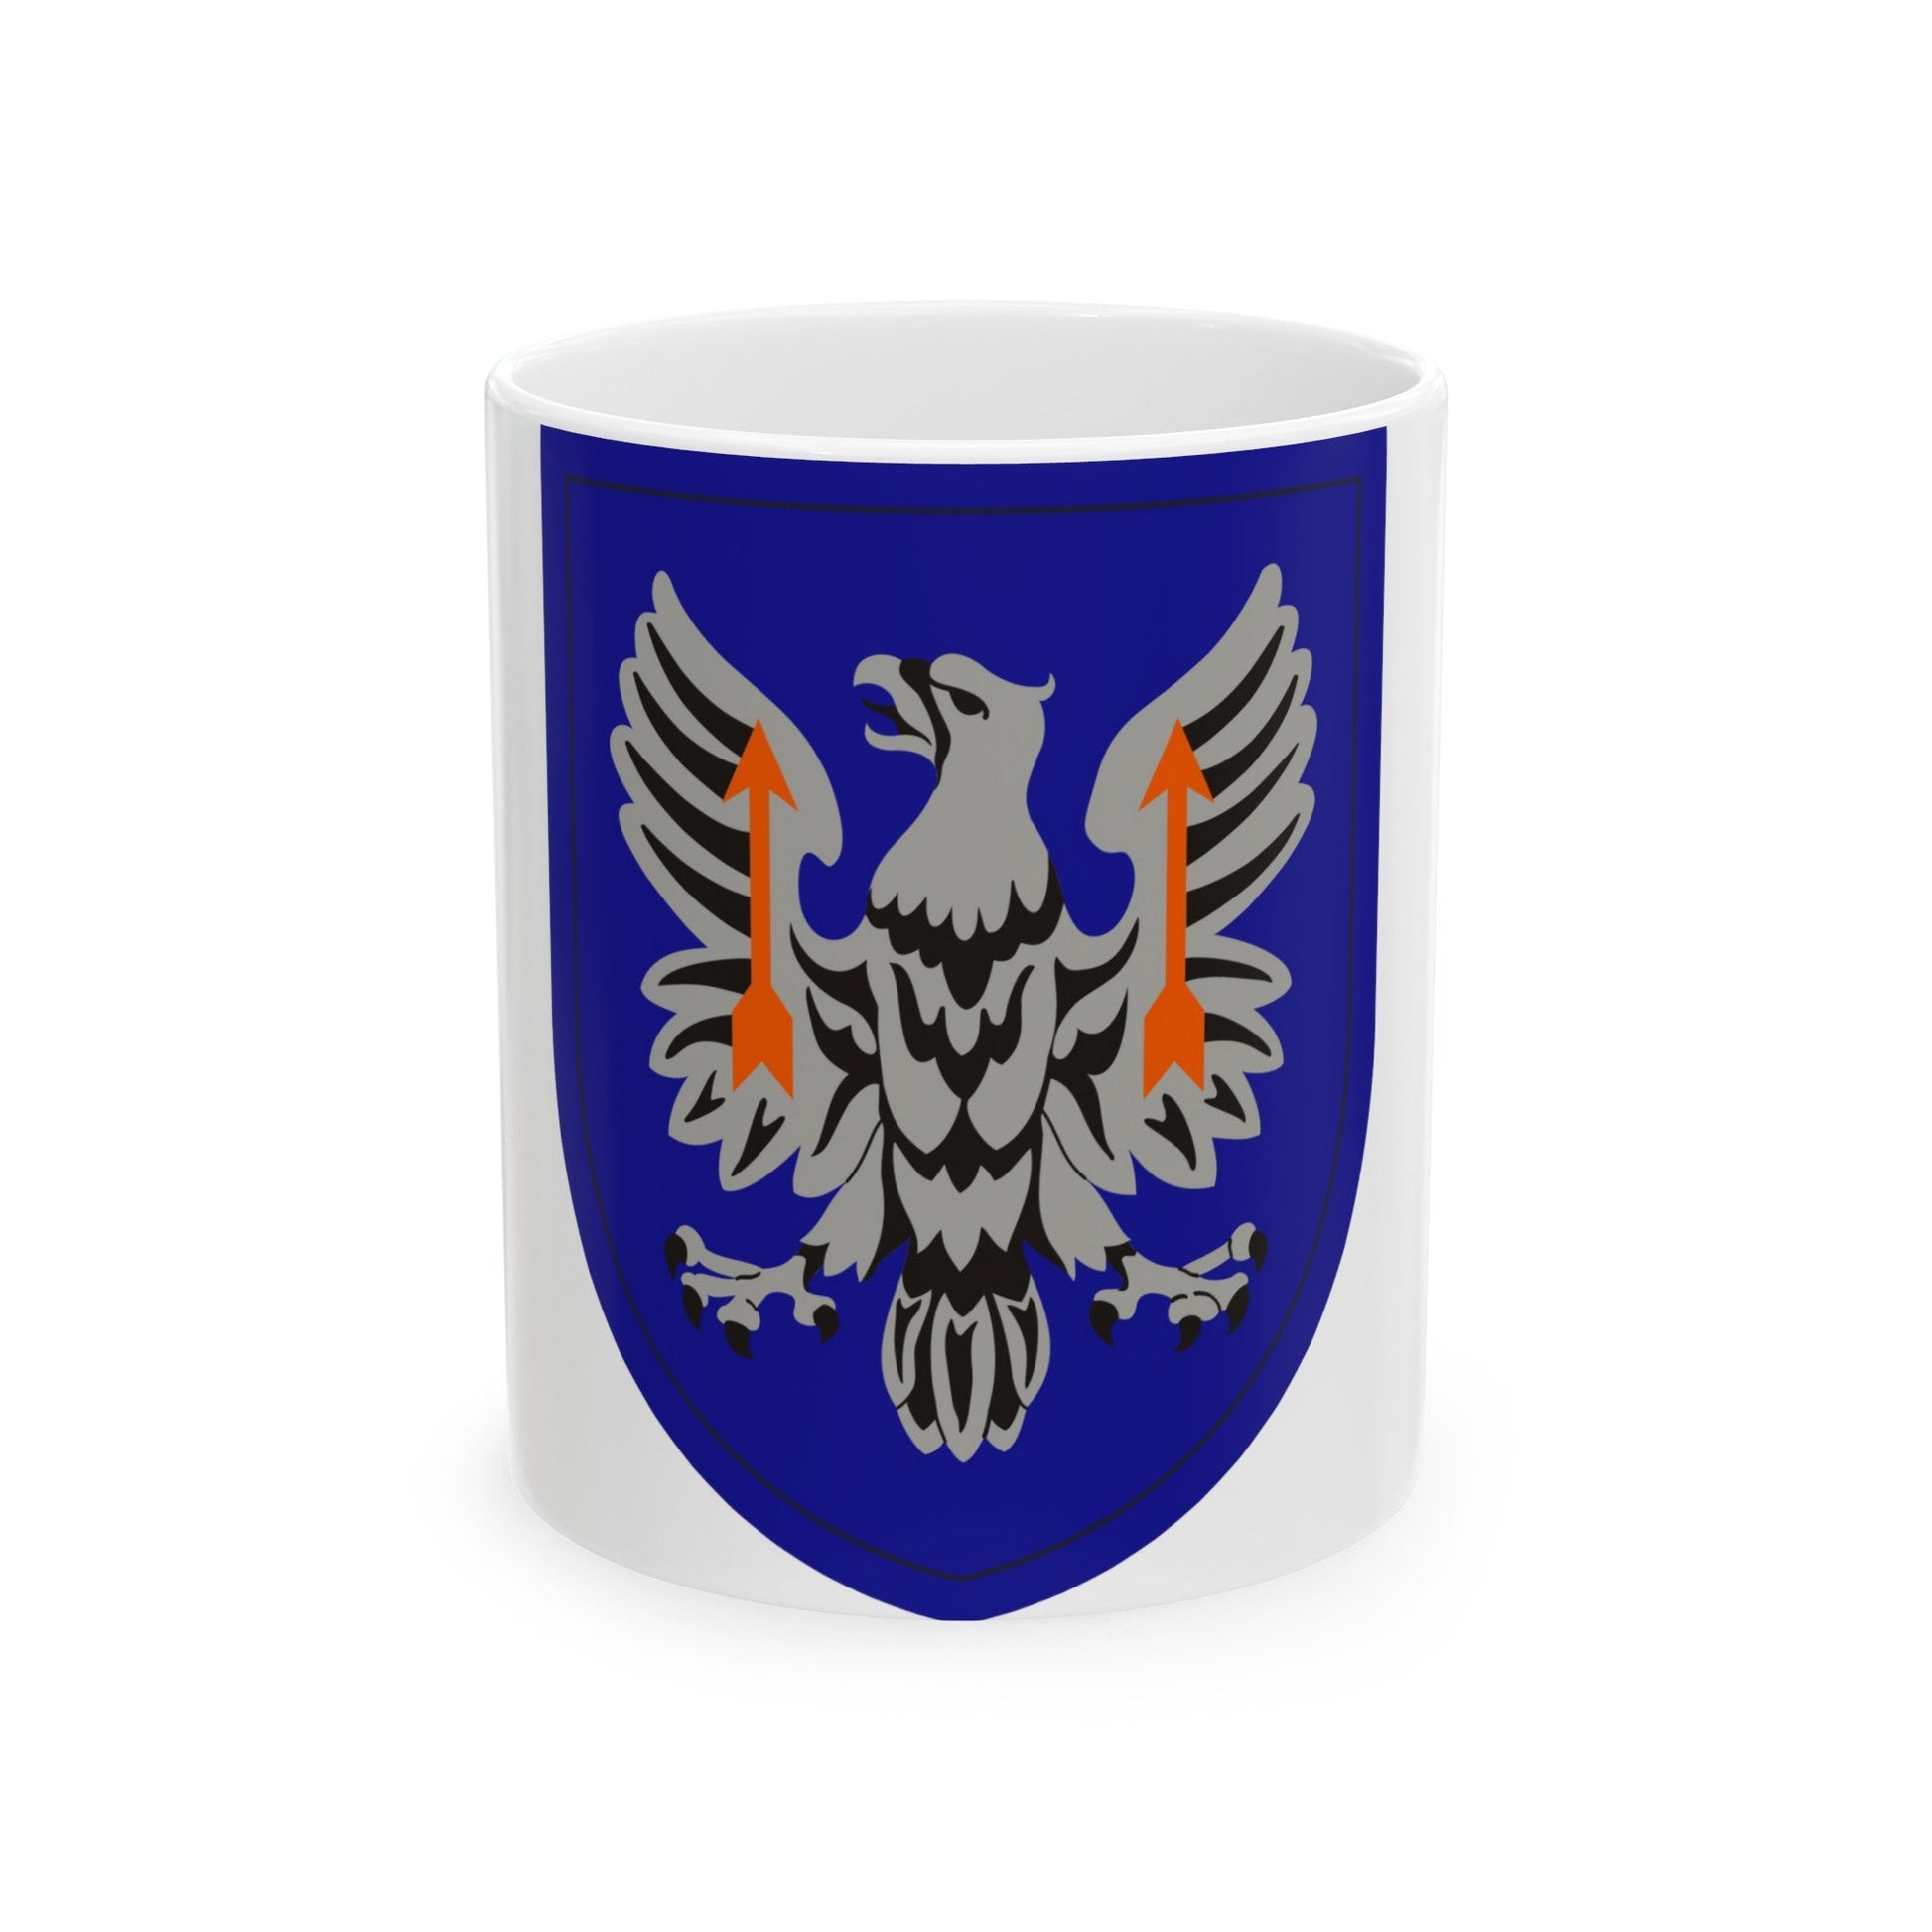 11th Expeditionary Combat Aviation Brigade (U.S. Army) White Coffee Mug-11oz-The Sticker Space